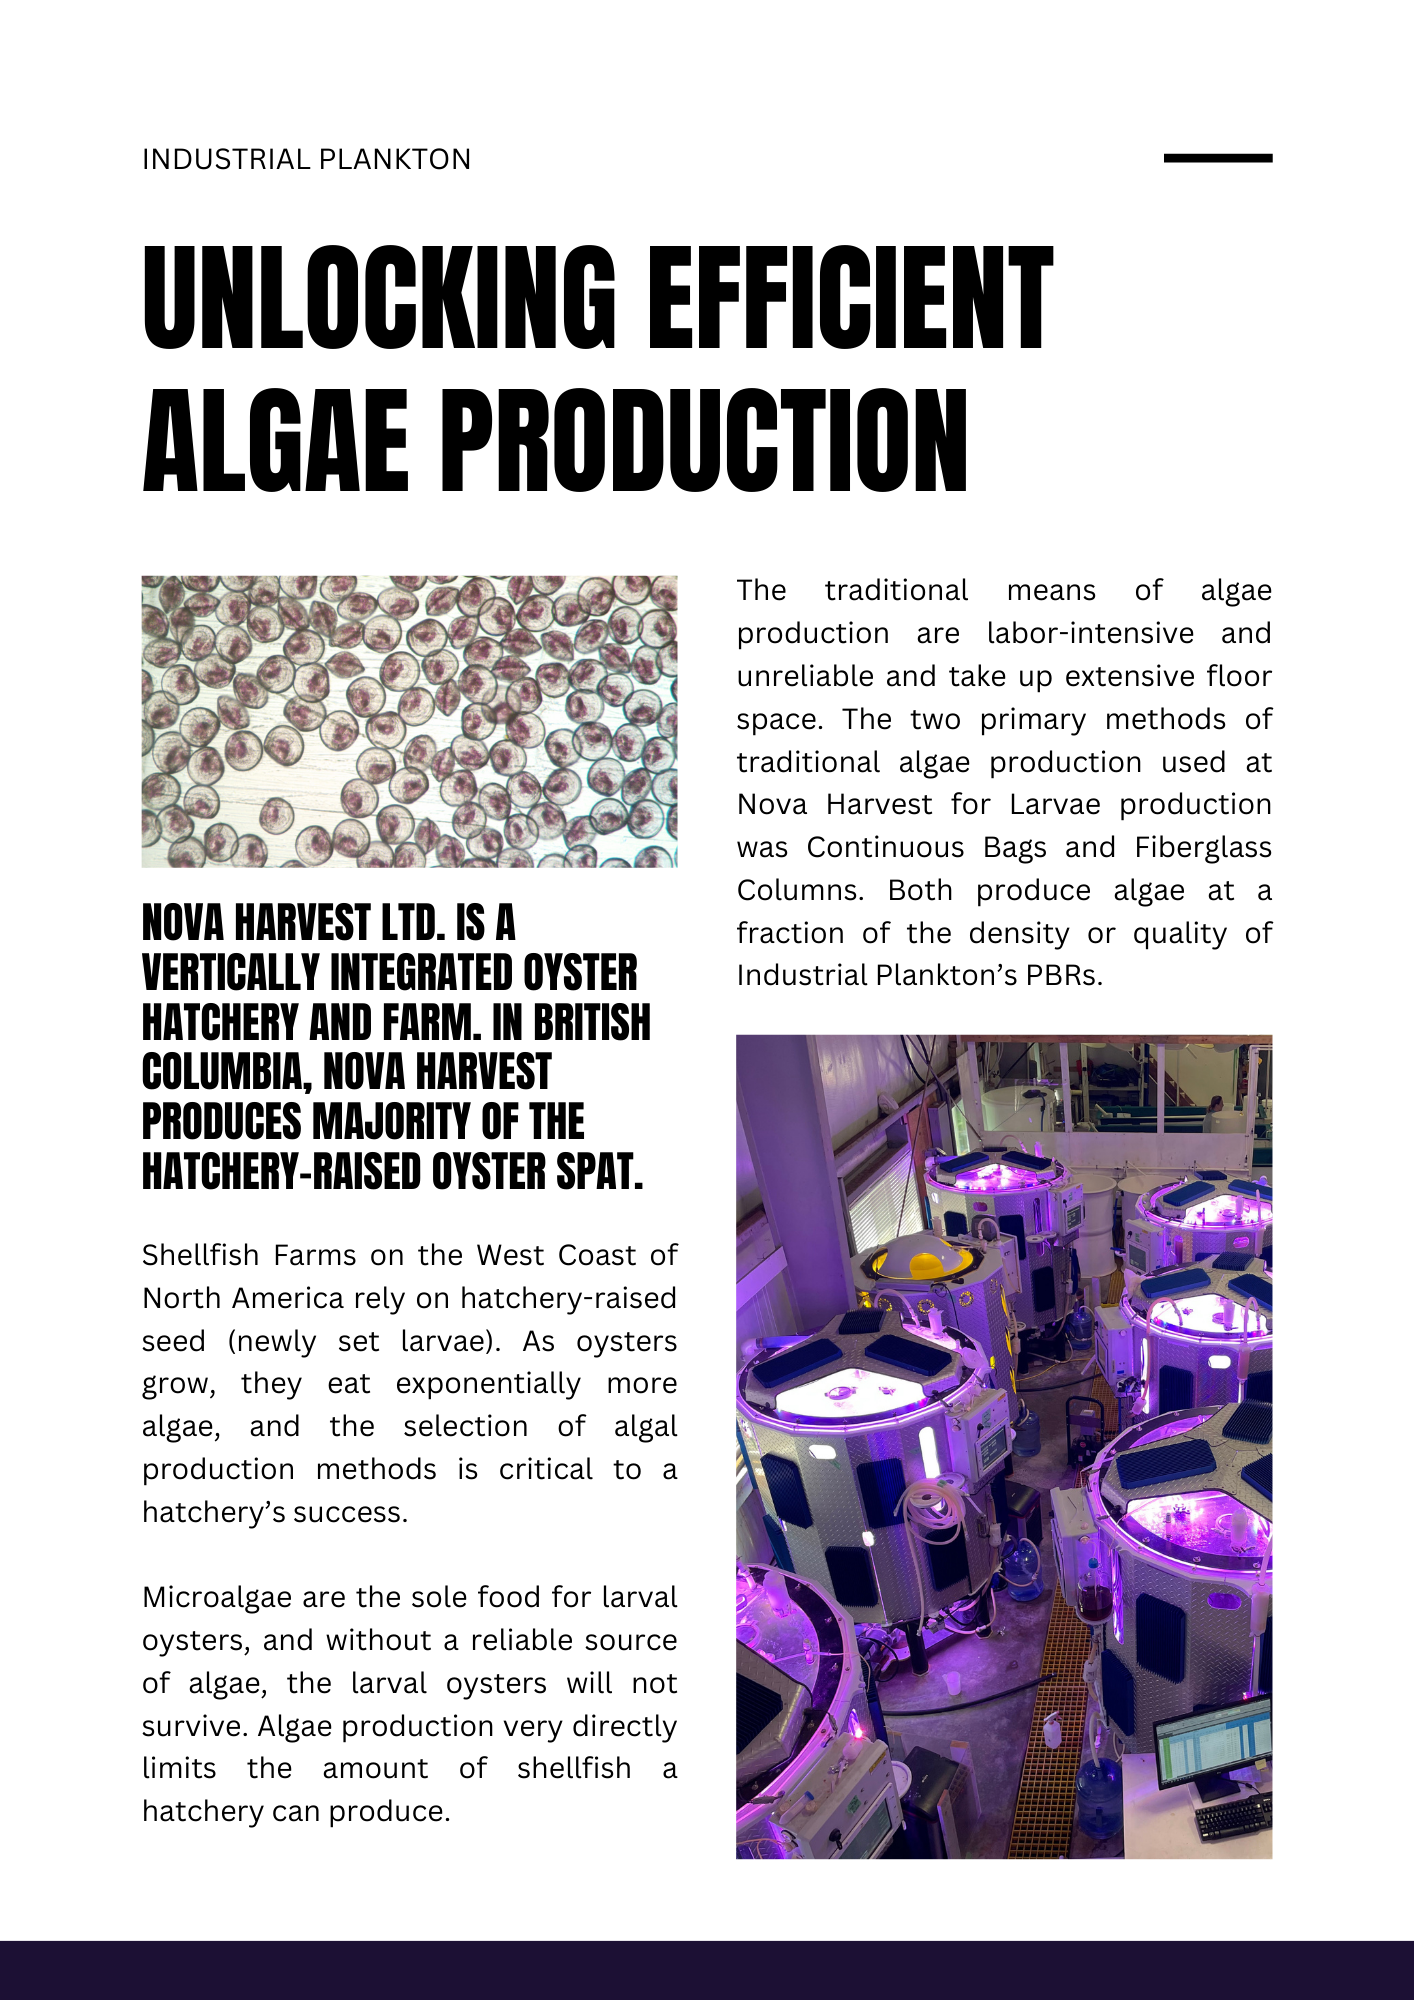 Efficient Algae Production